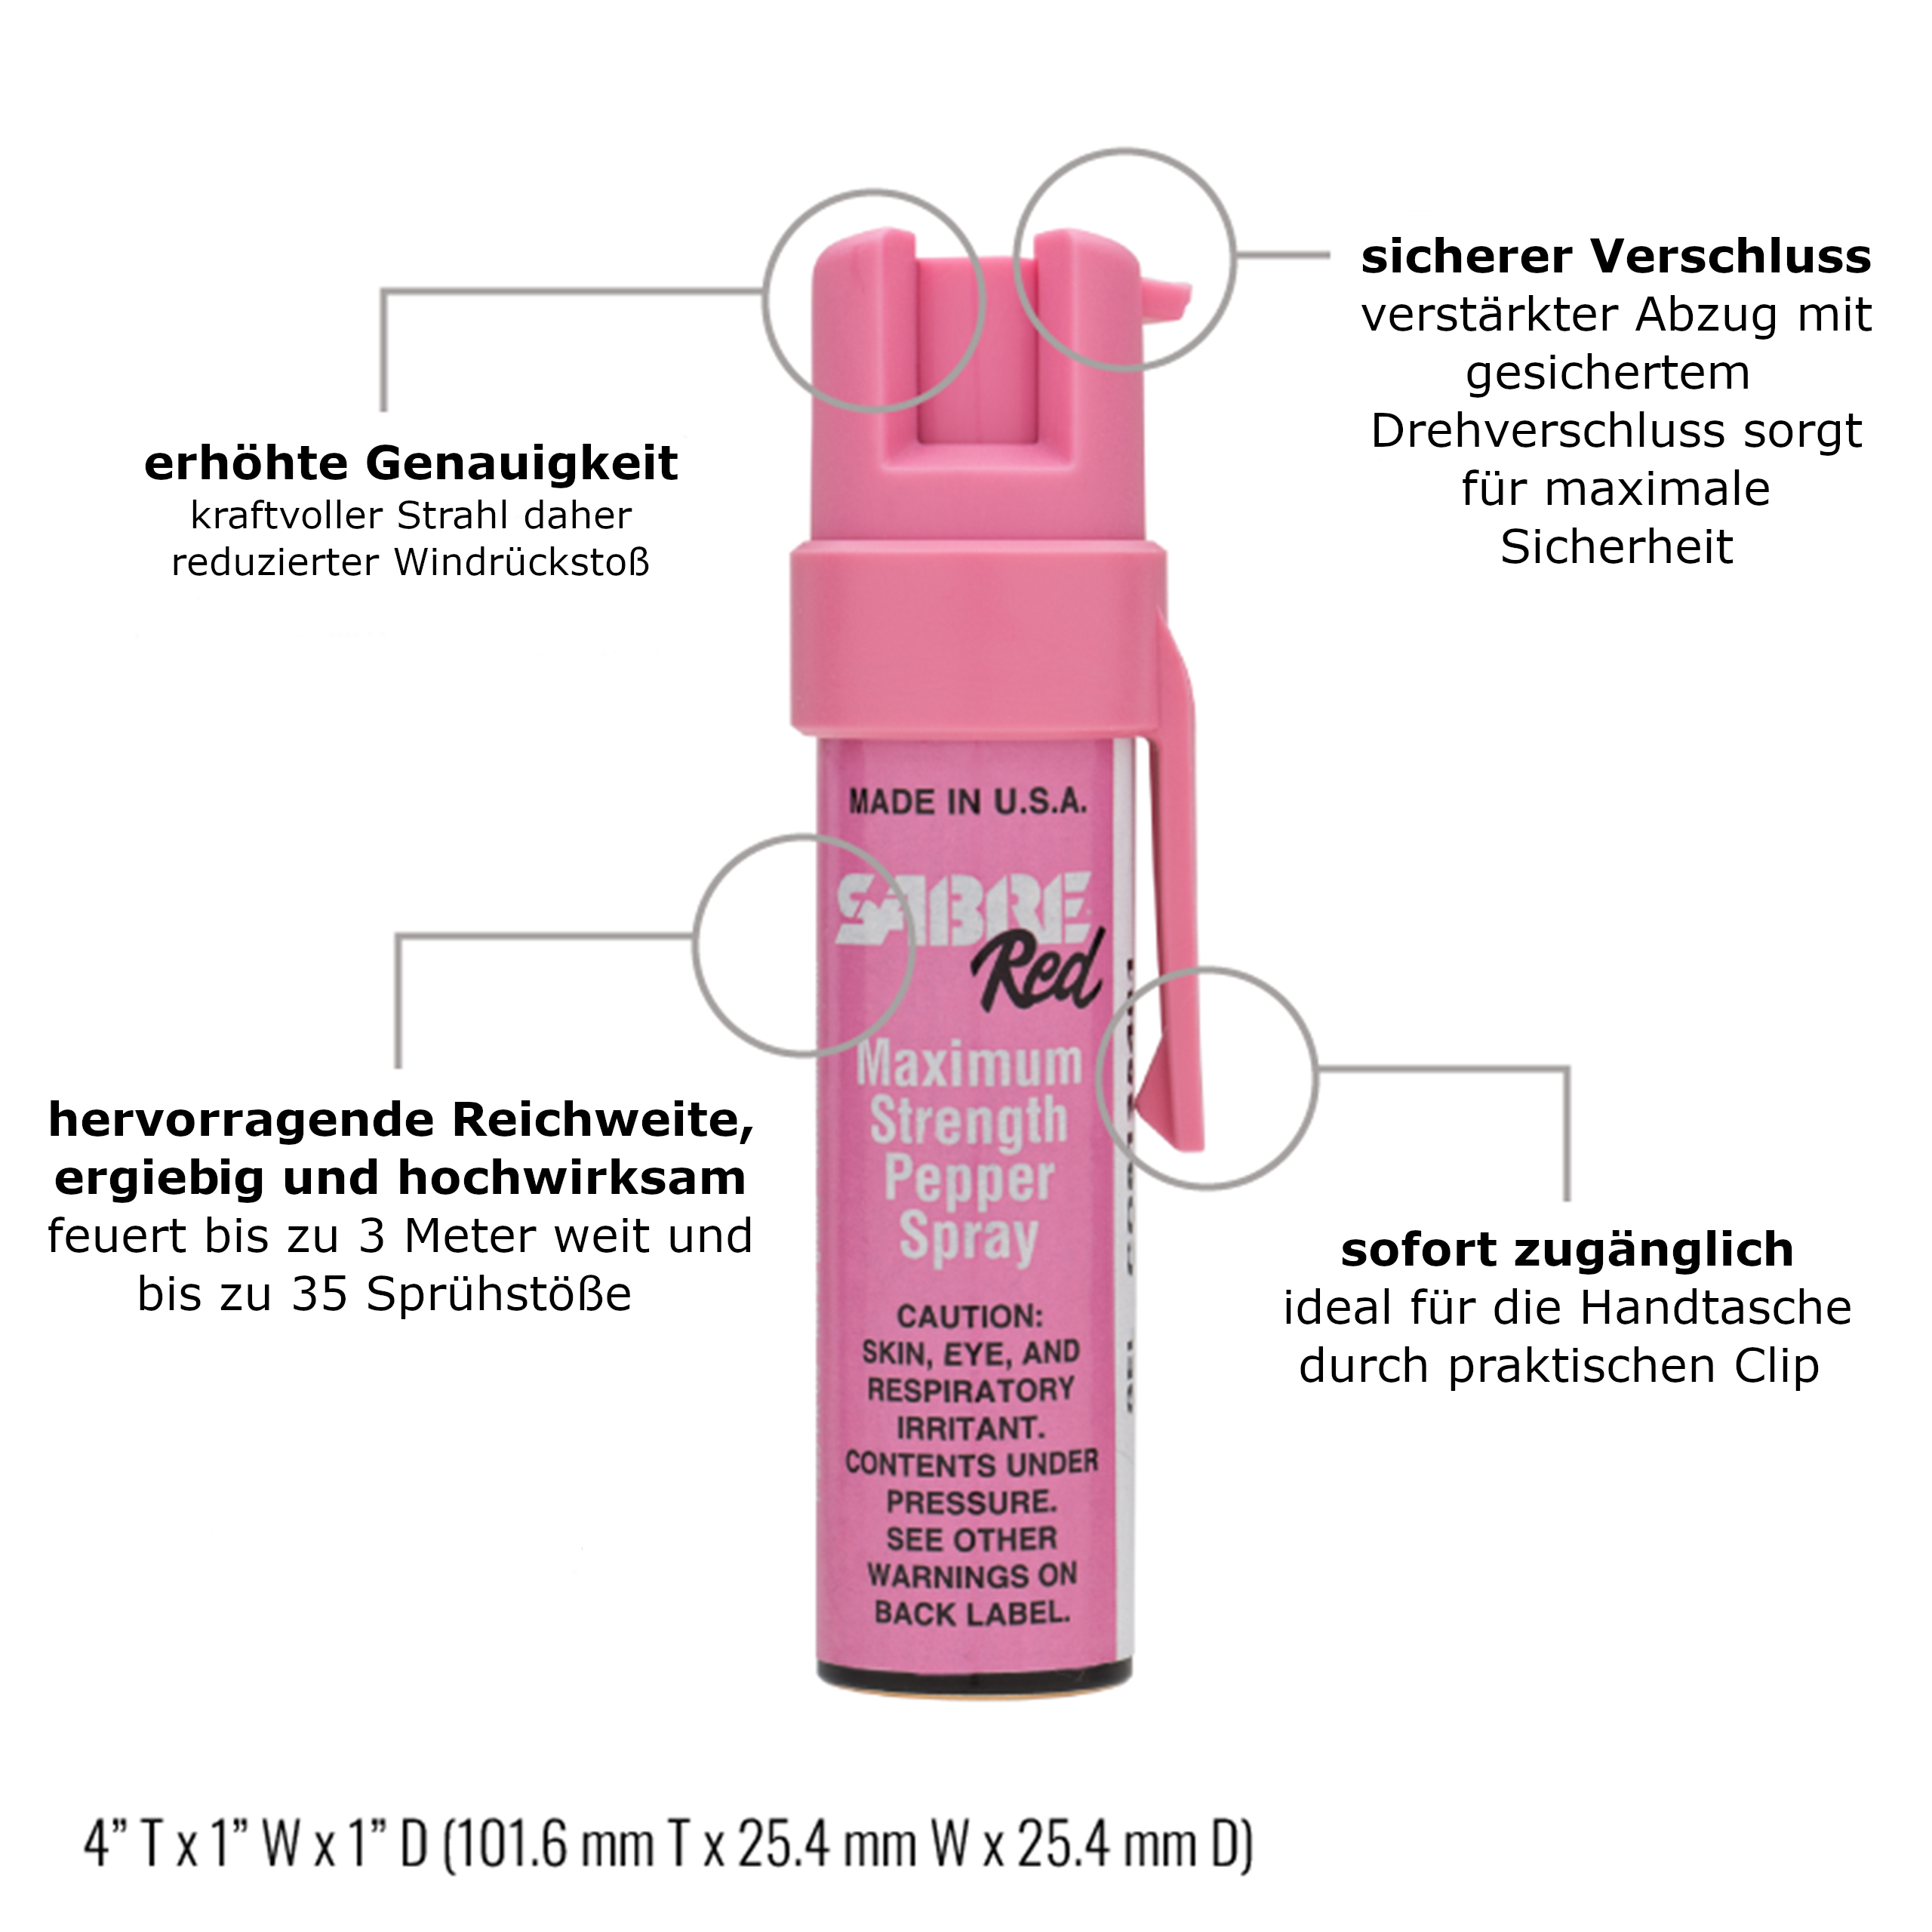 SabreRed Pfefferspray zur Tierabwehr mit Trageclip • UV-Marker • pink